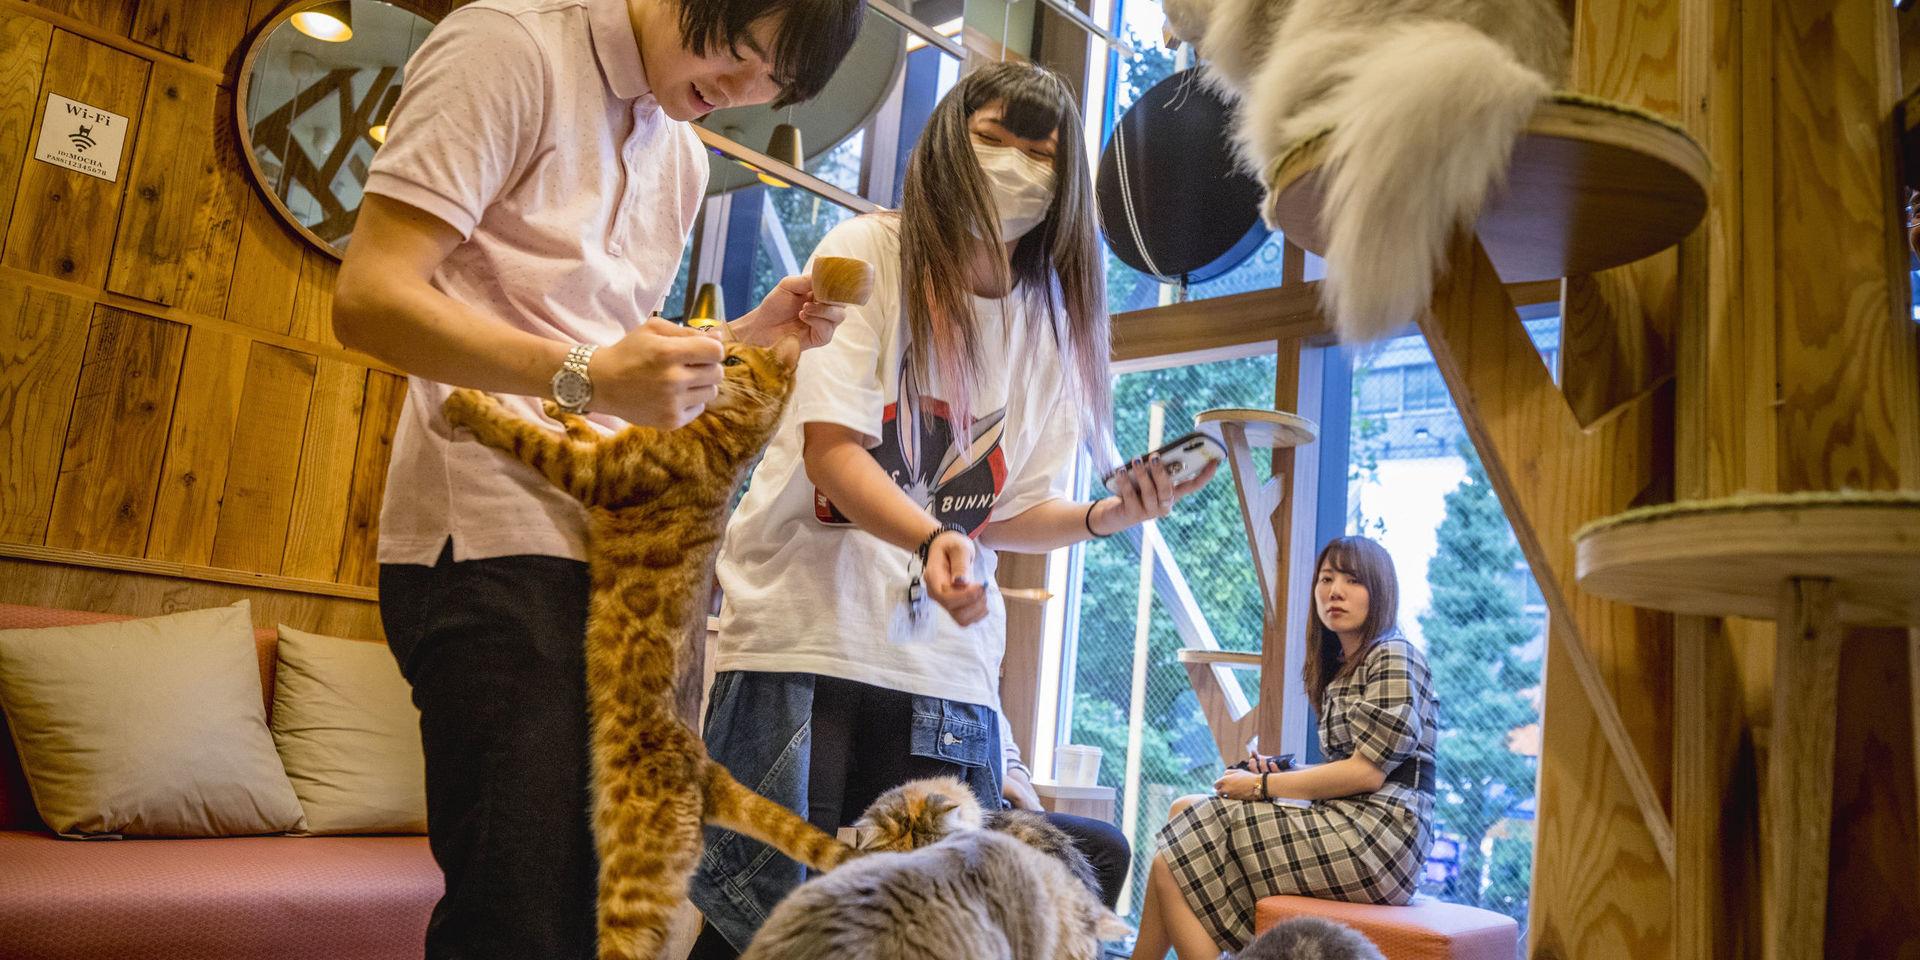 Kattkaféet Mocha. Ett sätt att koppla av för stressade invånare i mångmiljonstaden Tokyo är att ta en kaffe omgiven av katter.